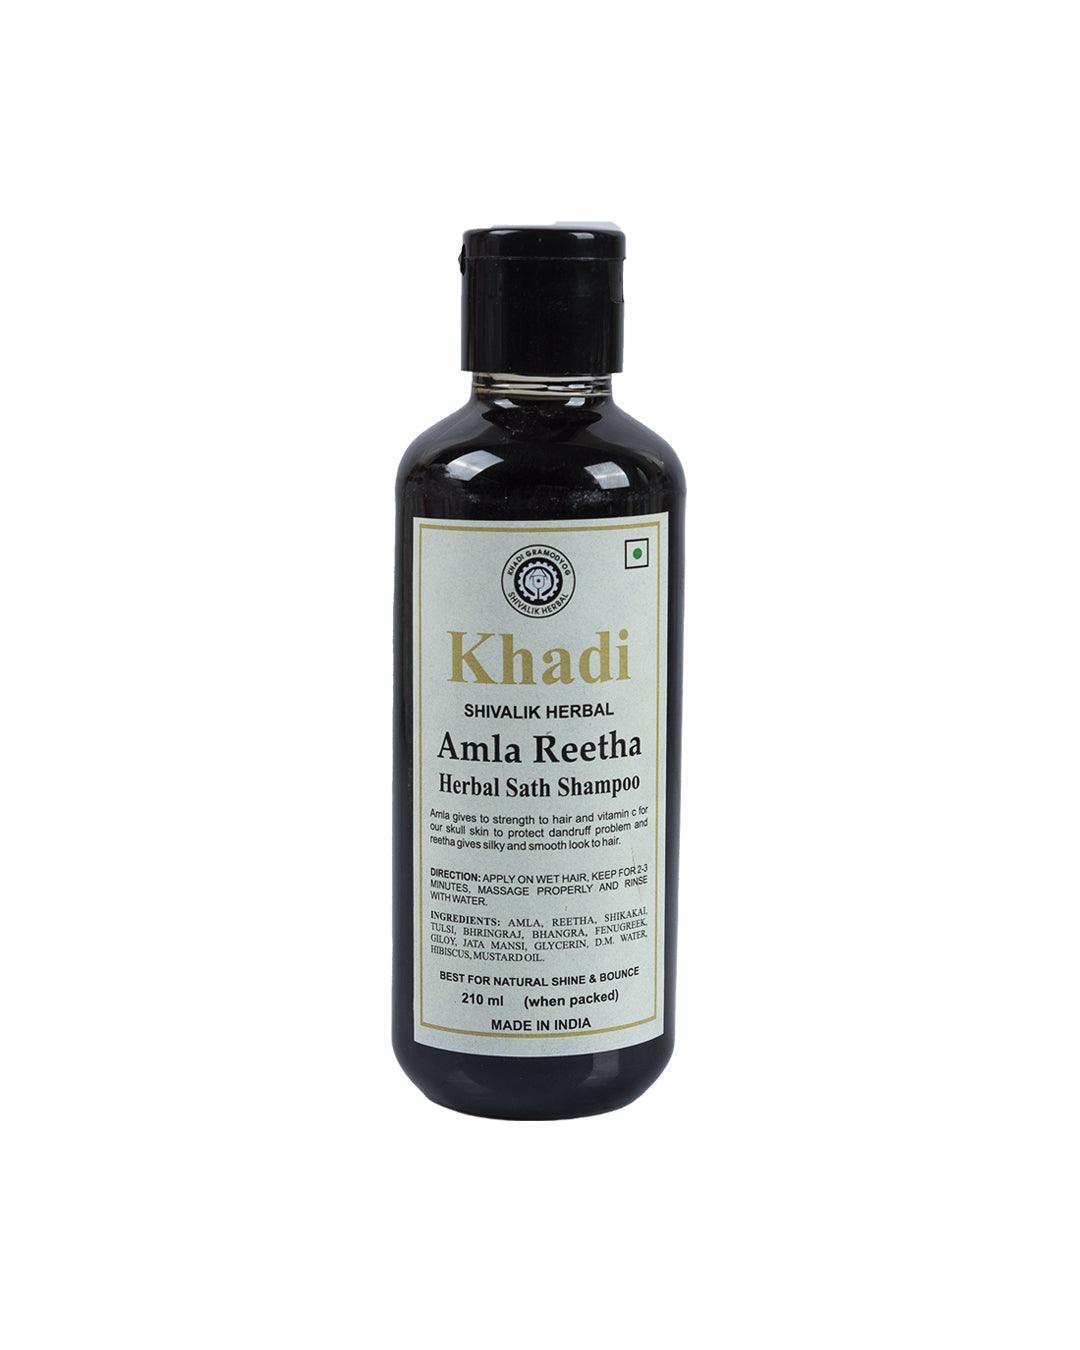 Khadi Amla Reetha Herbal Shampoo, 210 mL - MARKET 99